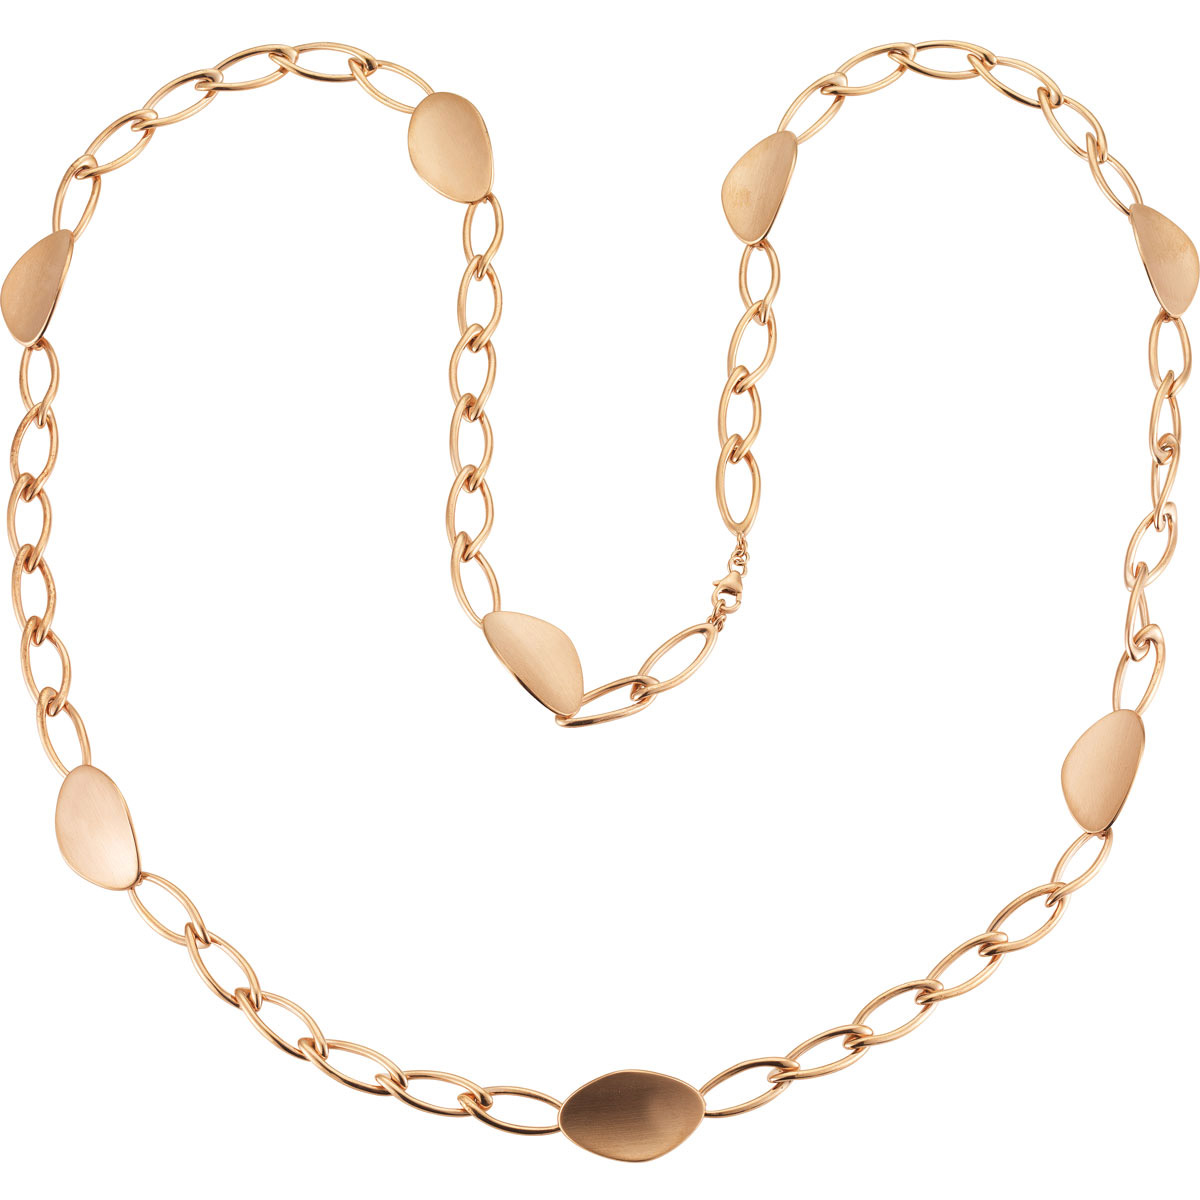 الجملة OEM / ODM مجوهرات قلادة مجوهرات فضة 925 مصنع بالجملة